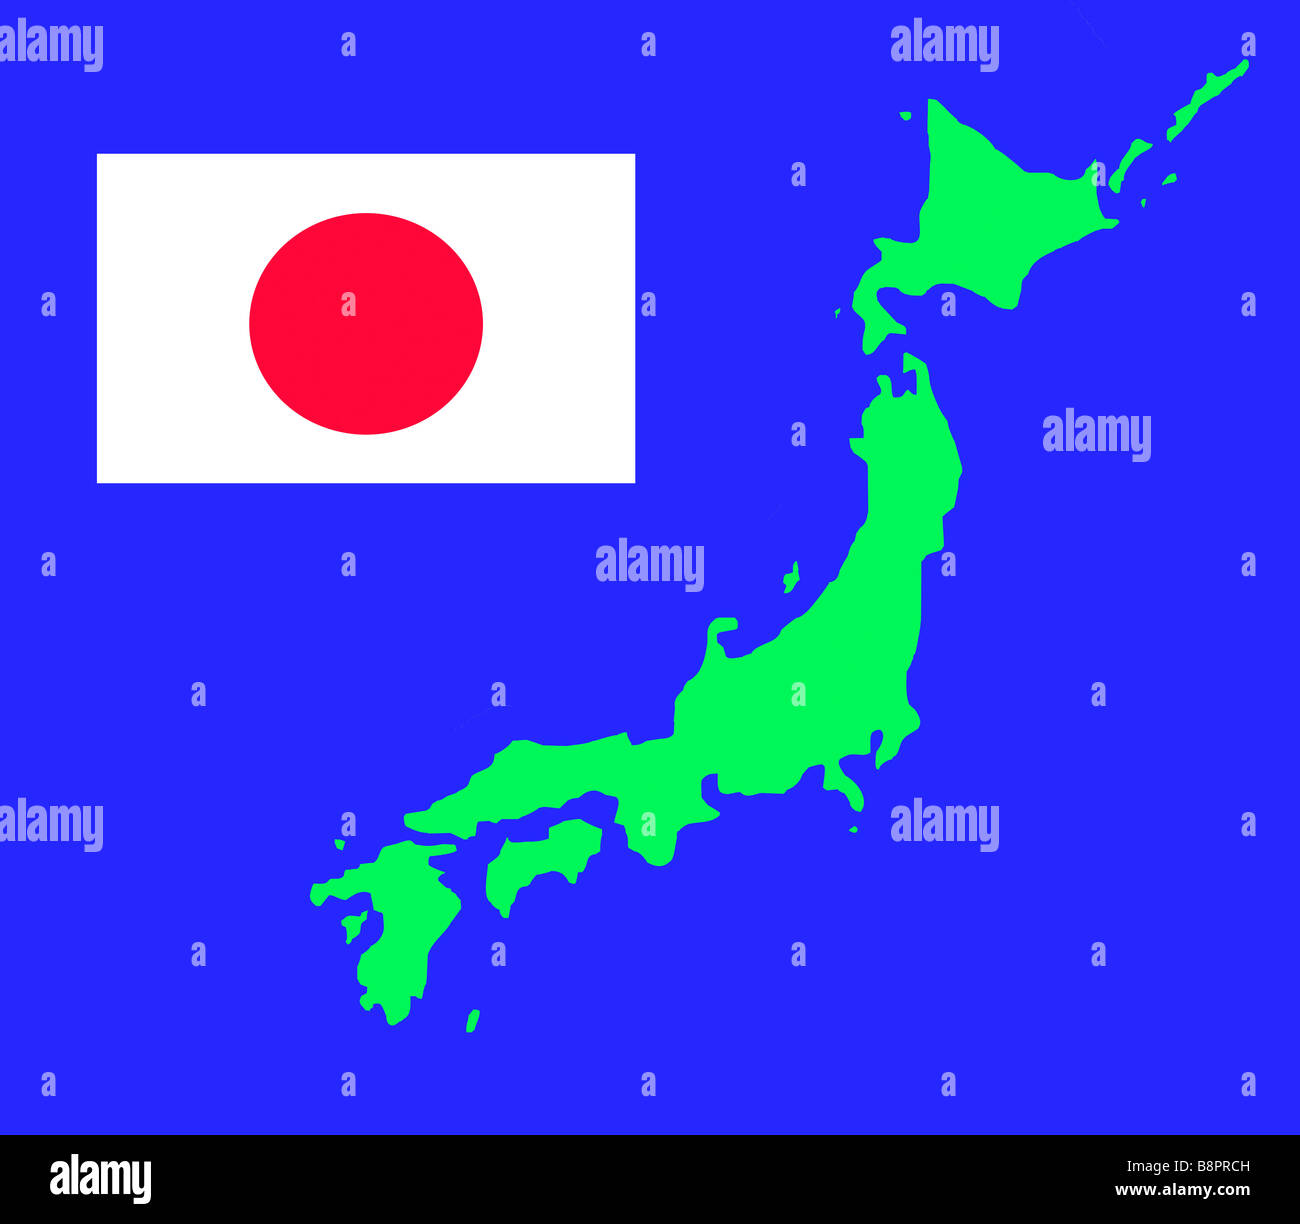 Insel von Japan Karte Umriss und Fahne in grün auf blauem Hintergrund mit Beschneidungspfad isoliert Stockfoto